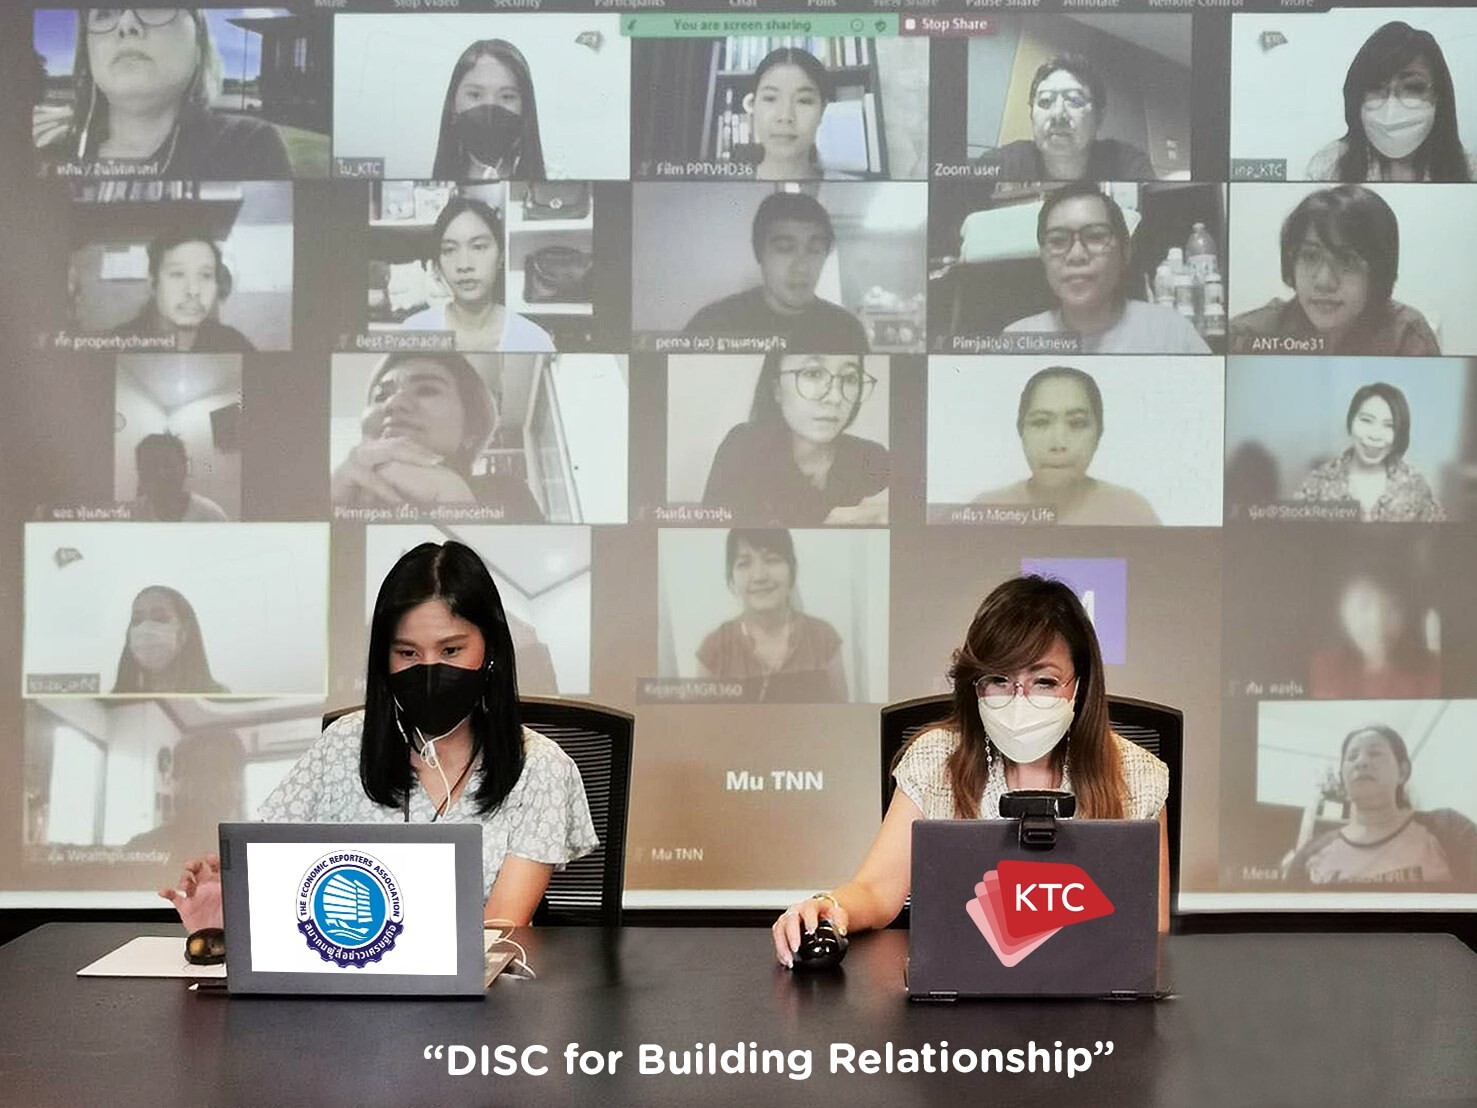 เคทีซีร่วมกับสมาคมผู้สื่อข่าวเศรษฐกิจจัดคลาสออนไลน์ "DISC for Building Relationship" เพื่อสมาชิกสมาคมฯ